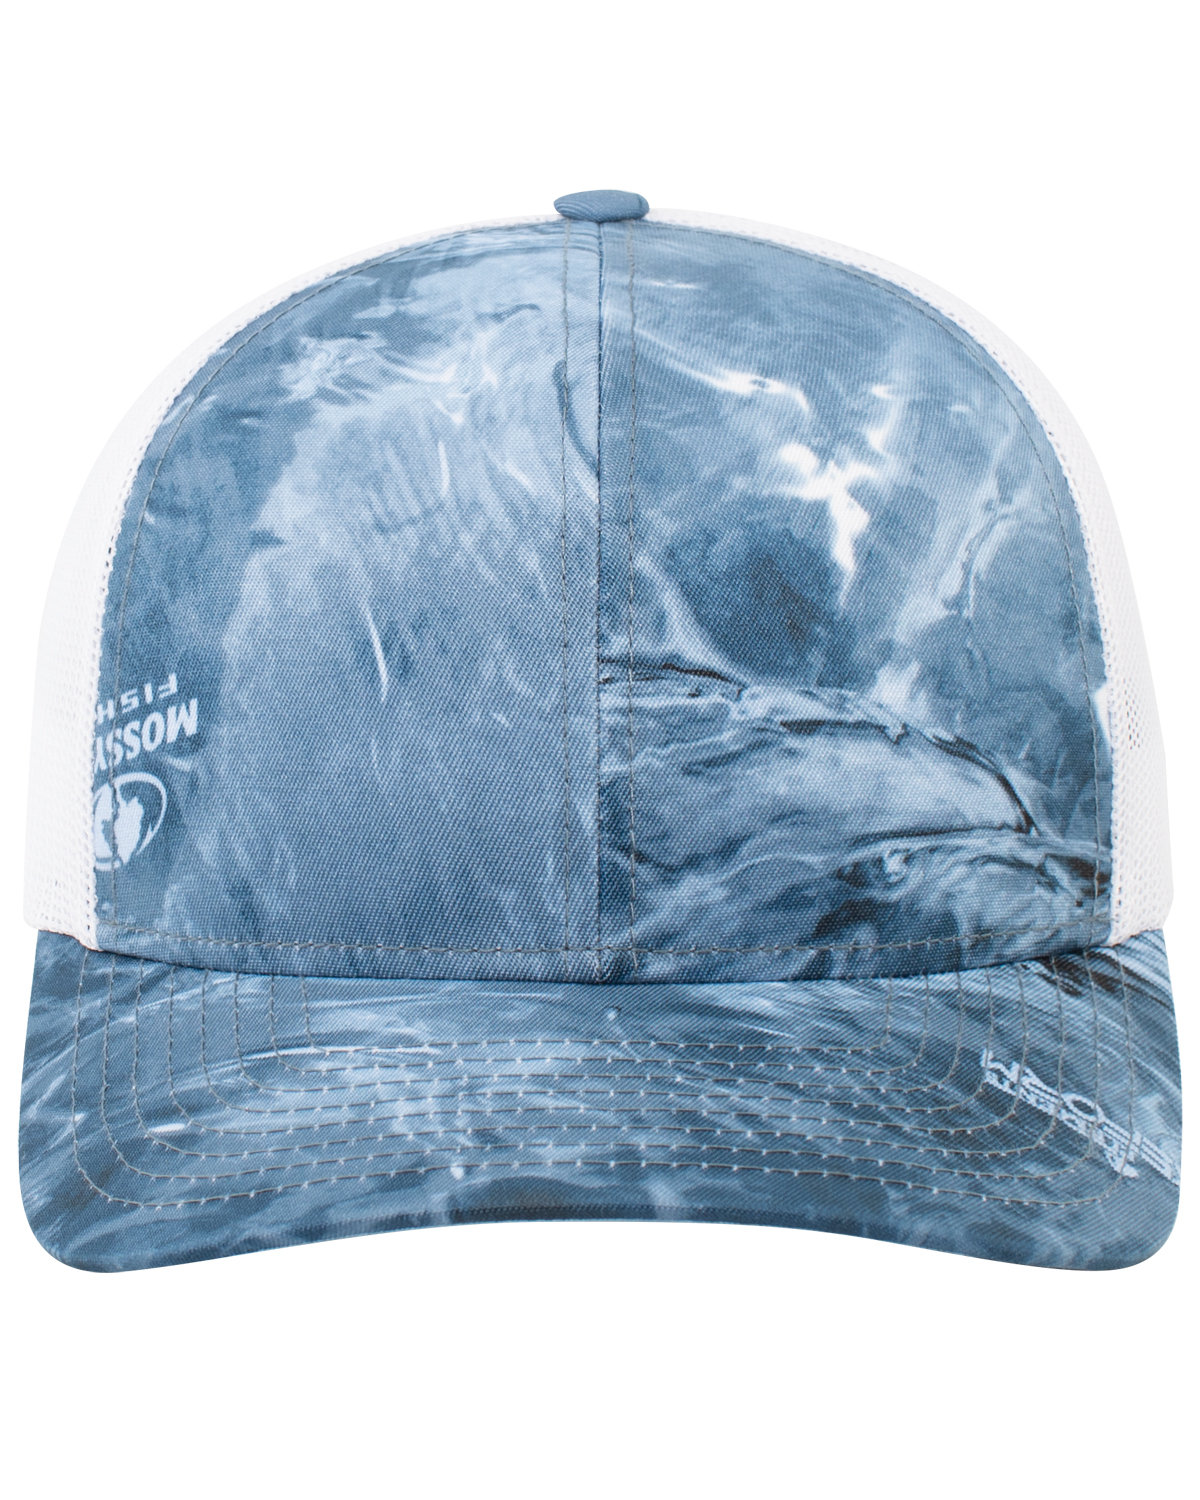 Pacific Headwear Snapback Trucker Hat HIGH SEAS/ WHITE 